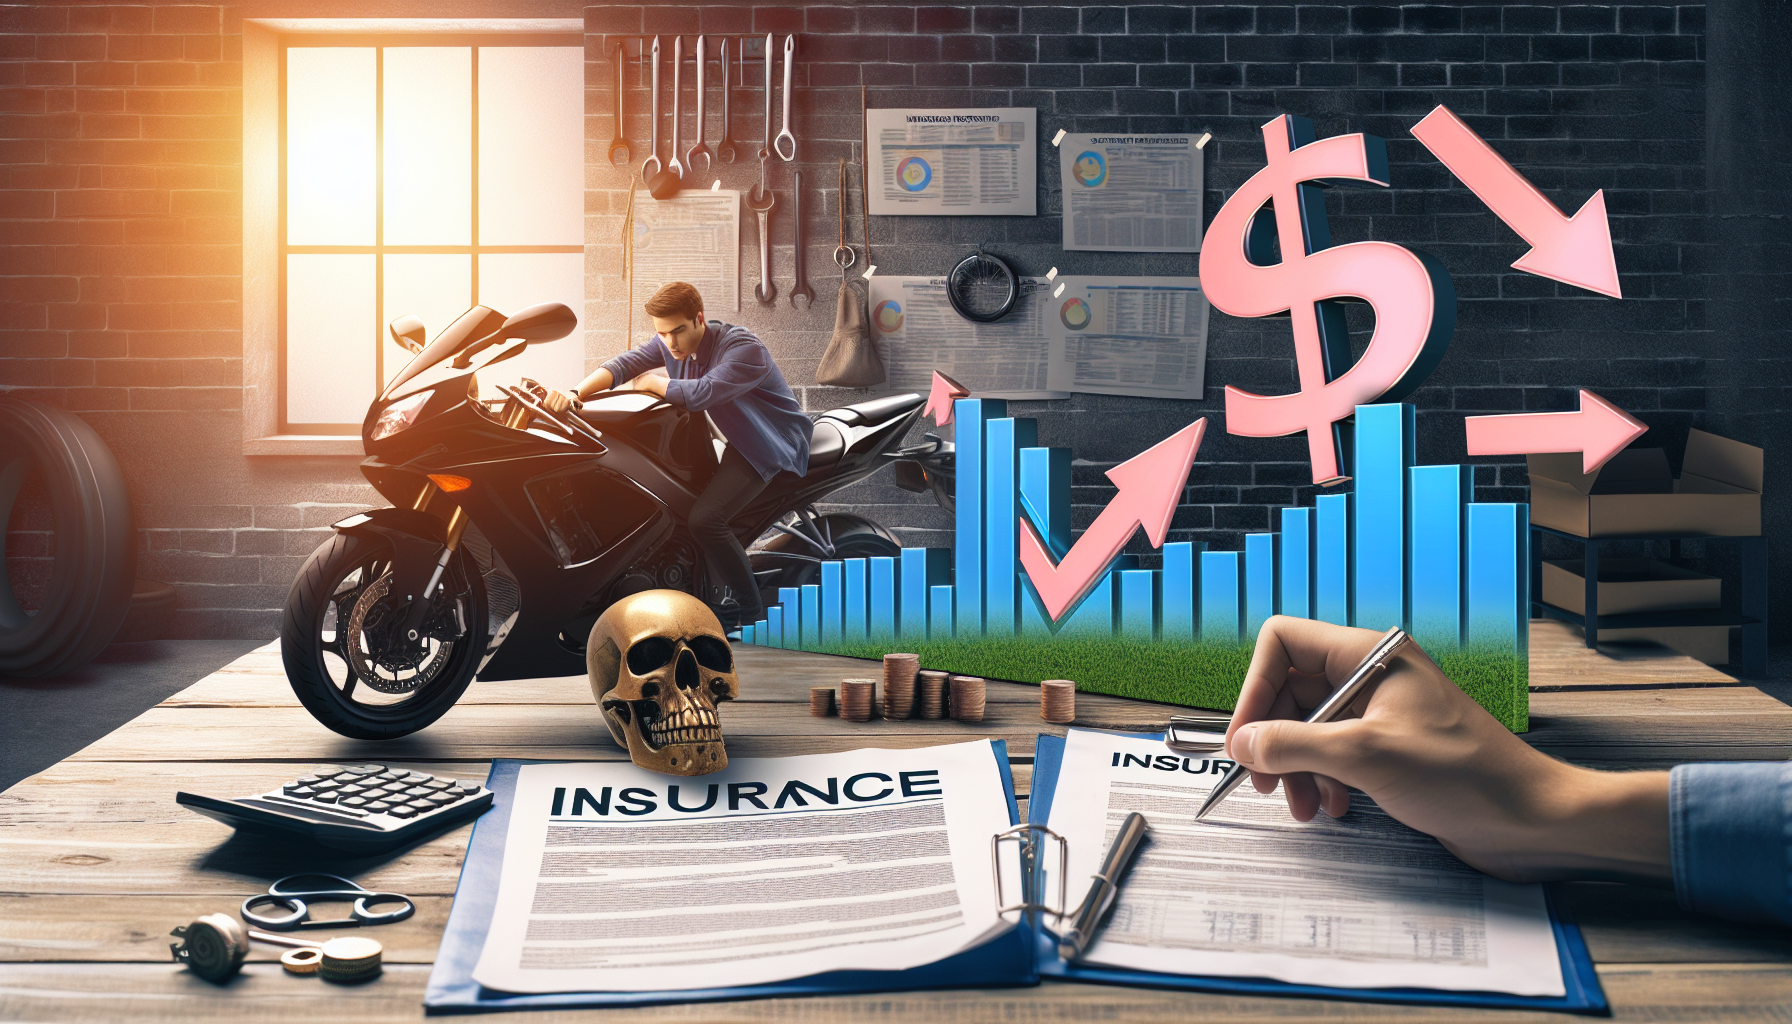 découvrez les meilleurs conseils pour économiser sur votre assurance moto 97420 grâce à notre comparateur. profitez de tarifs avantageux et des astuces pour réduire vos dépenses.